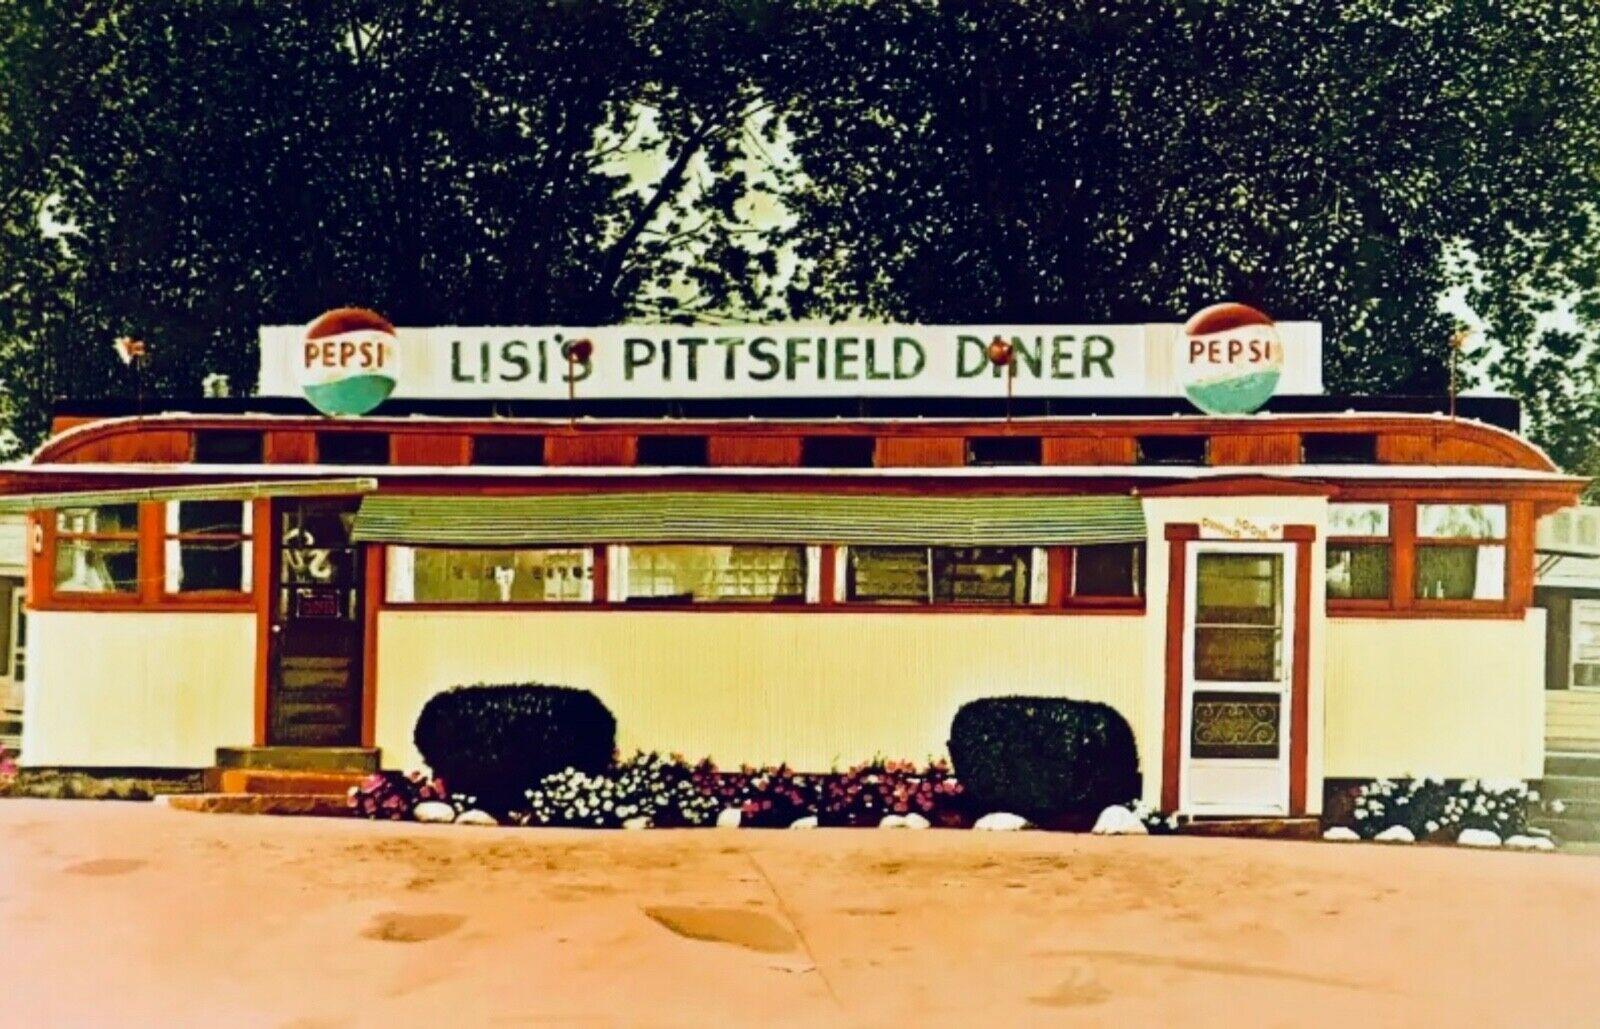 Lisi's Pittsfield Diner, John Baeder